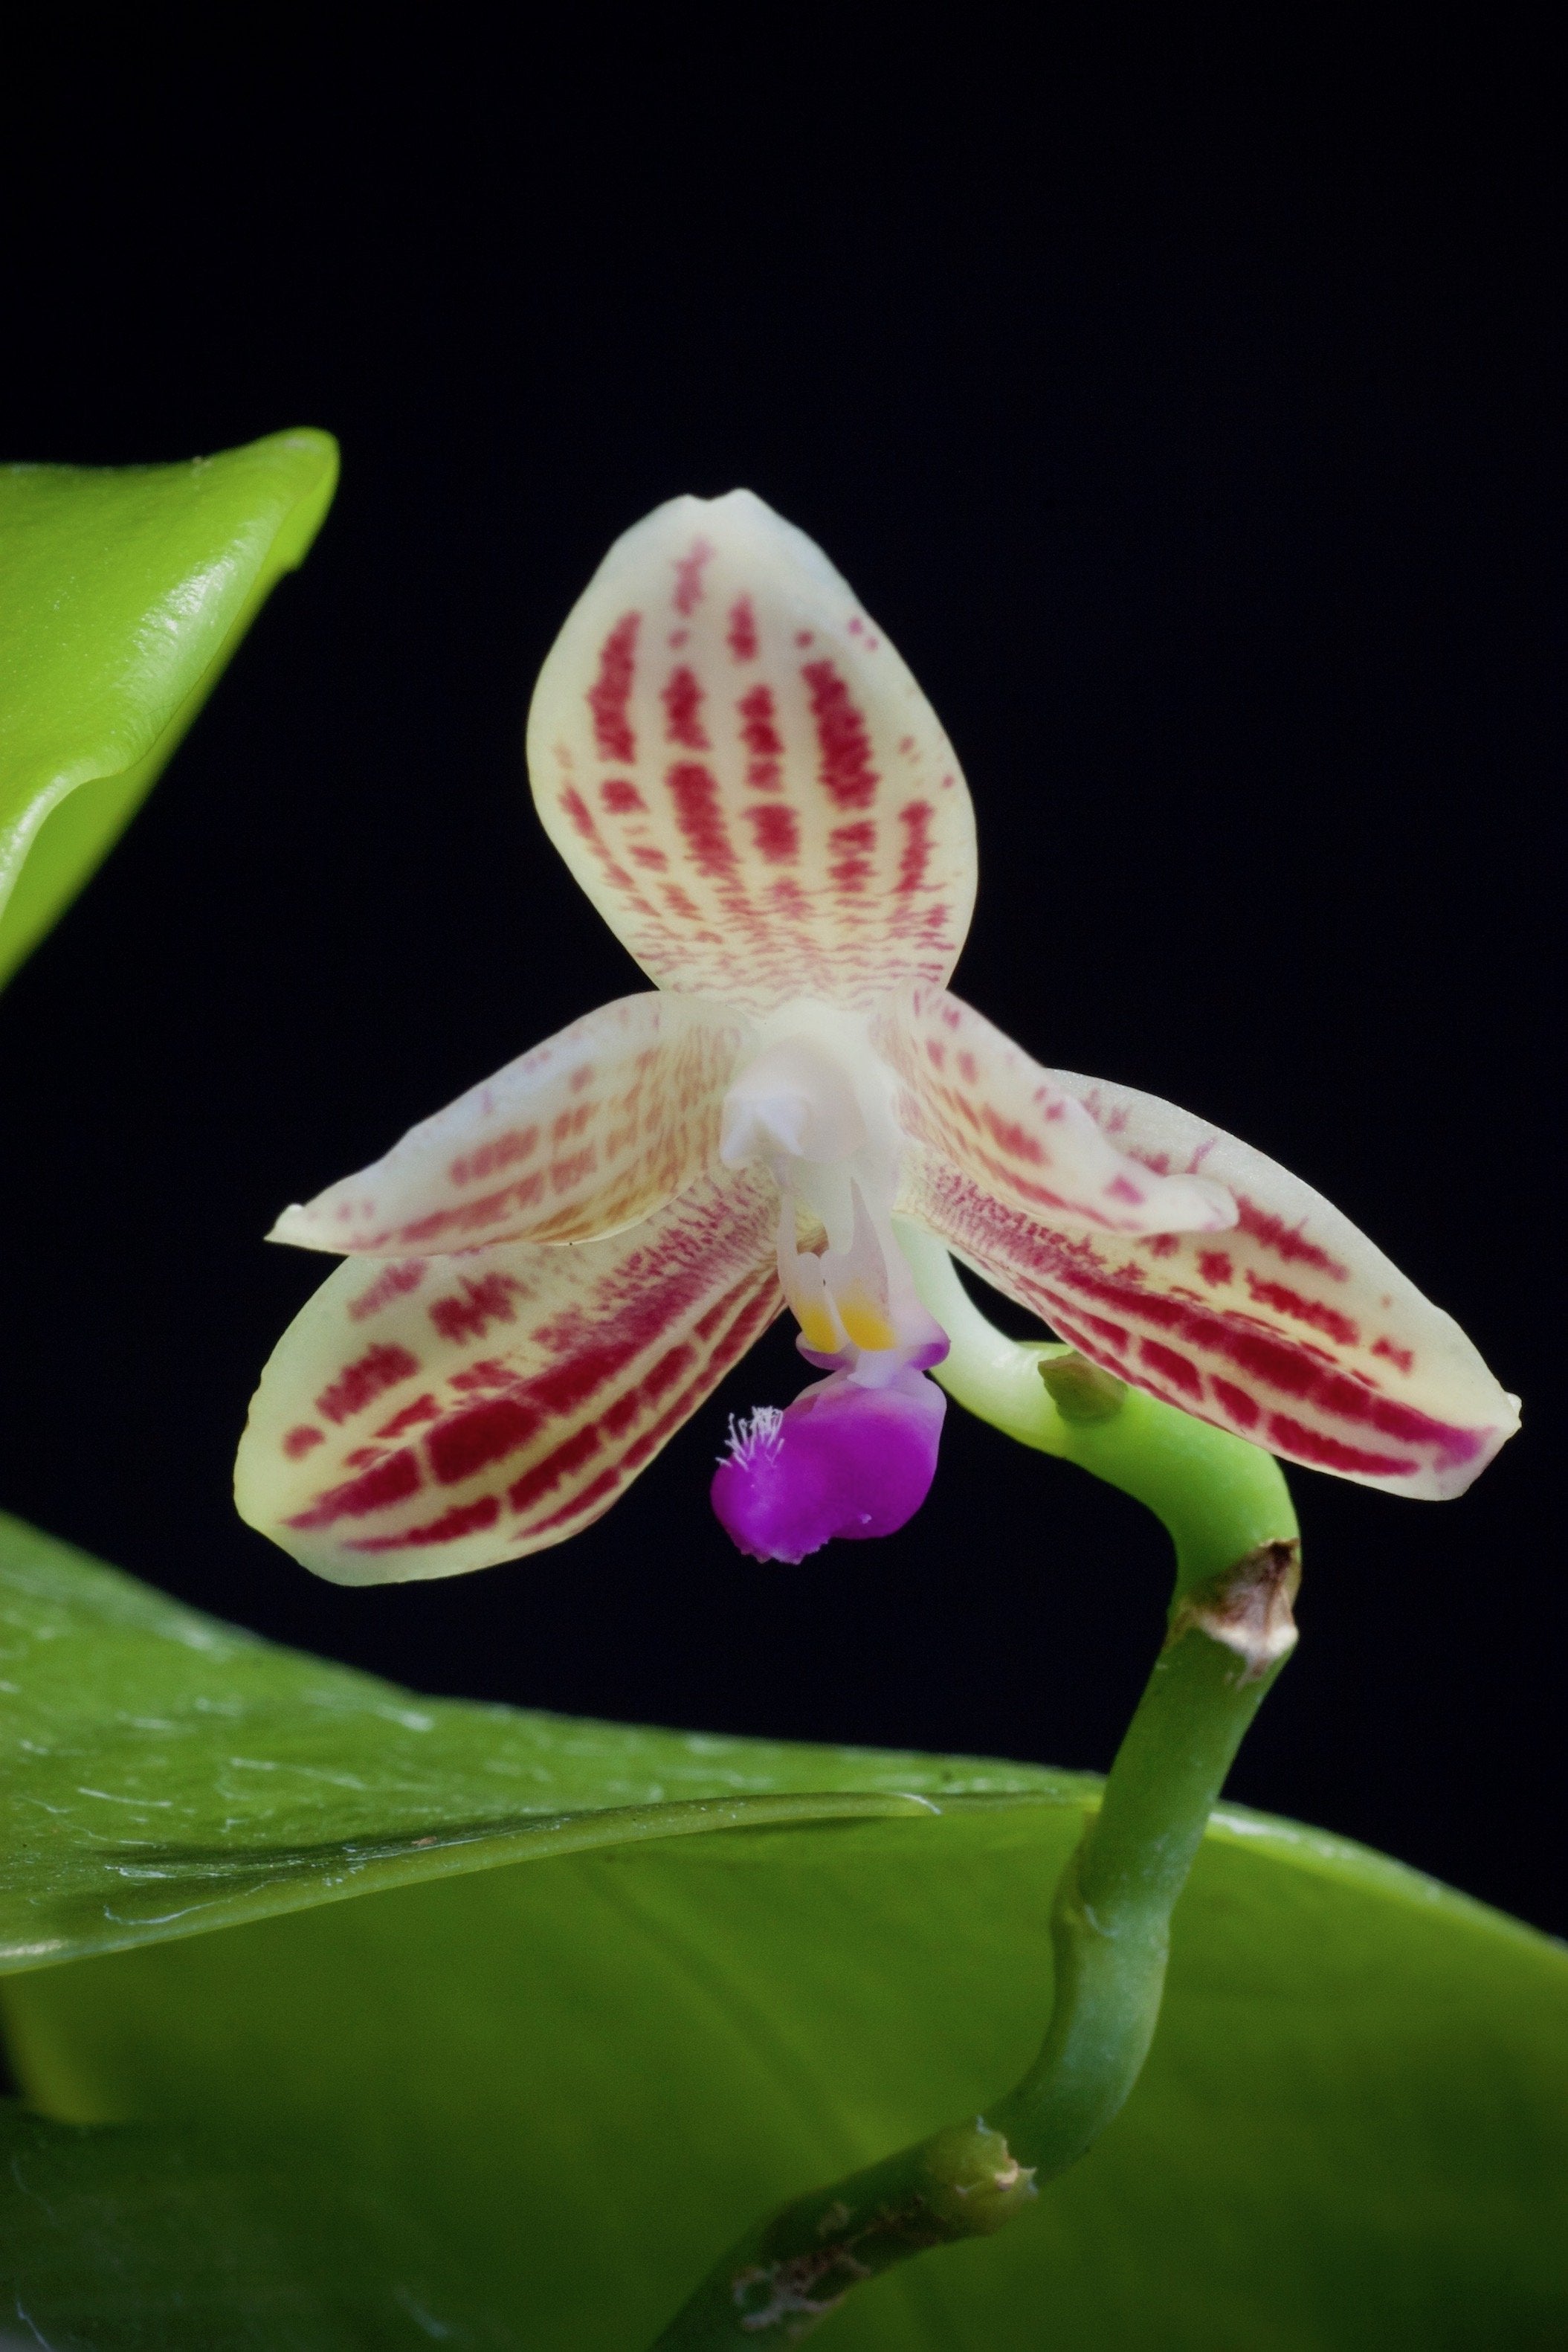 Phalaenopsis javanica "Big"